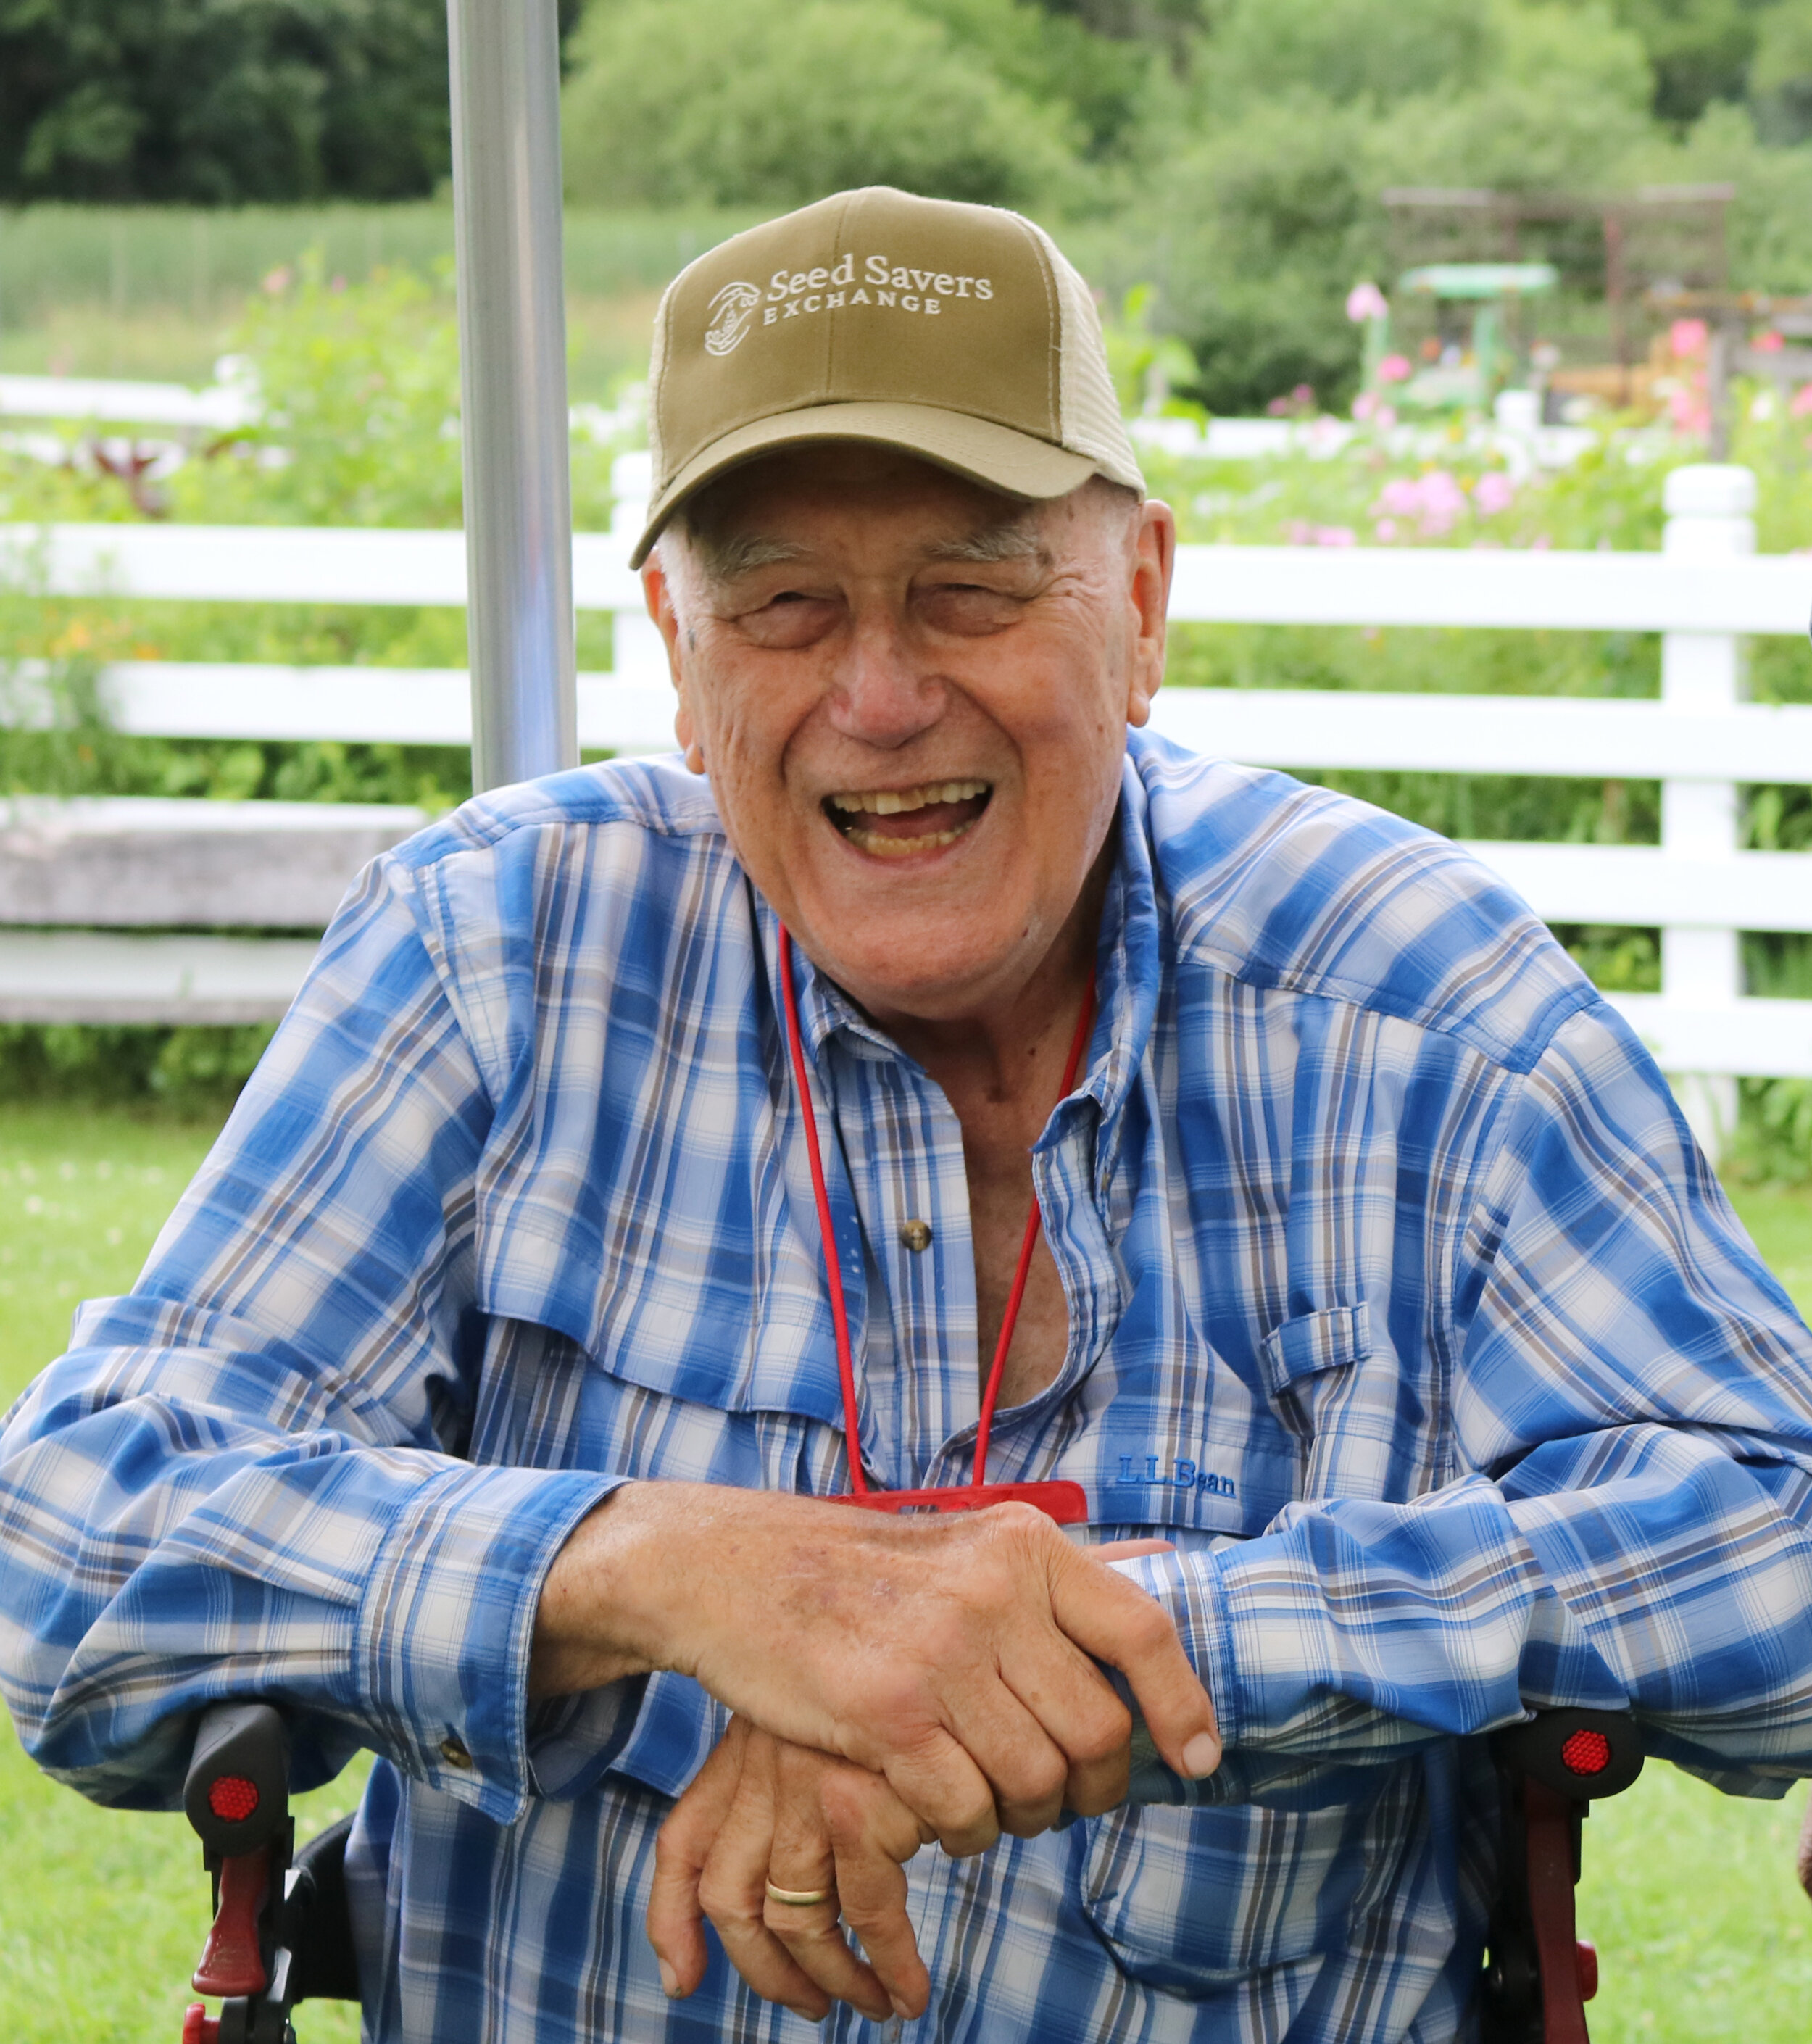 约翰·斯文森(John Swenson)在2019年种子保存者交易所(Seed Savers Exchange)的传统农场露营期间开怀大笑。亚博电竞演员